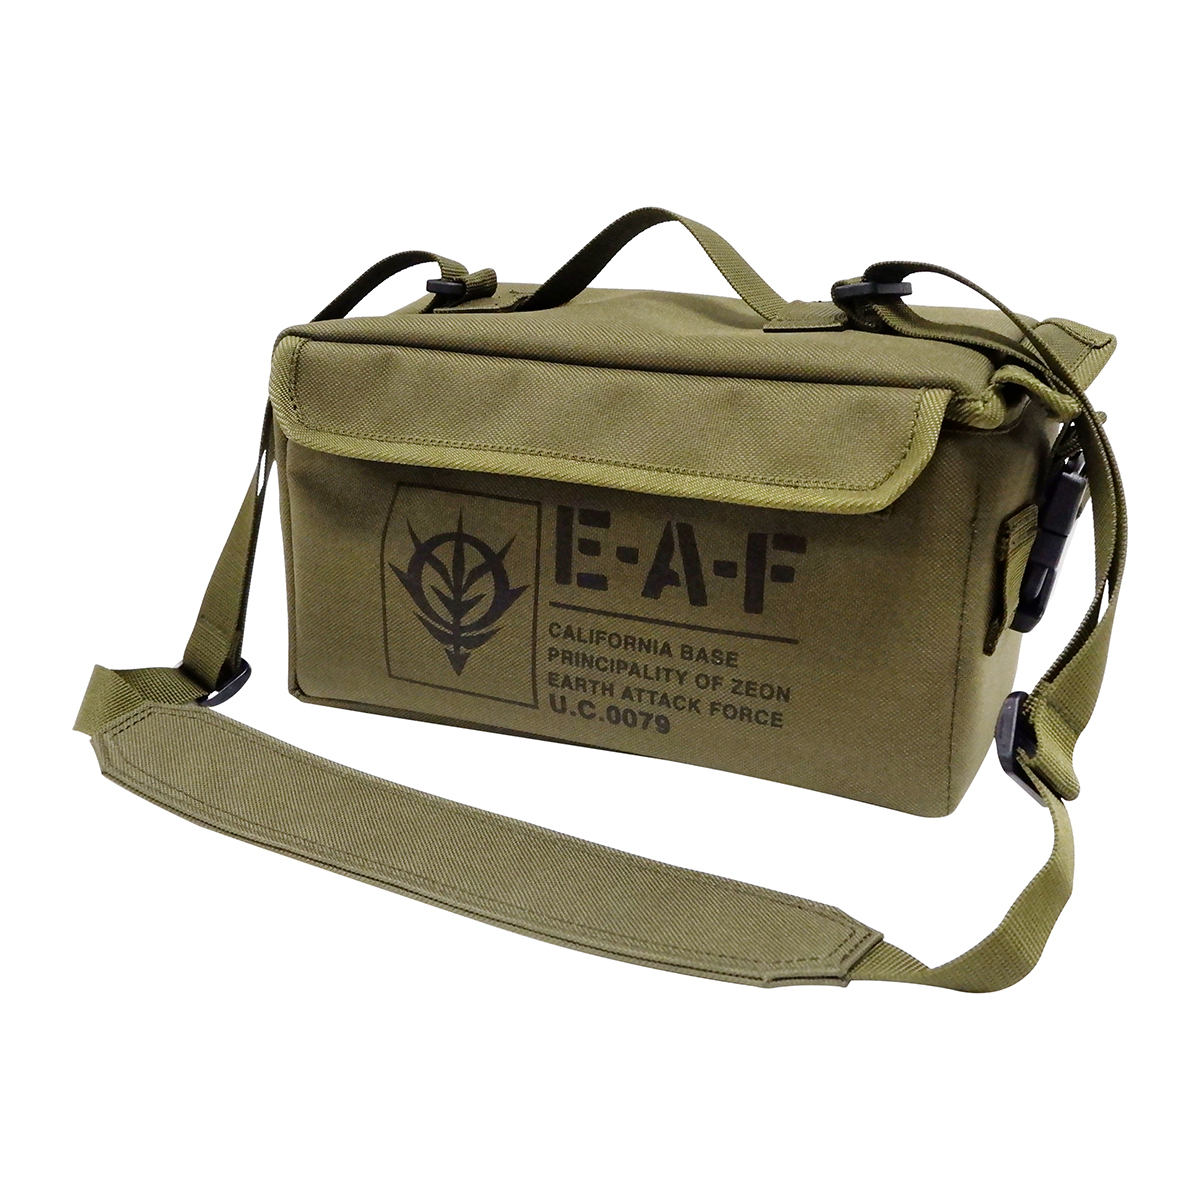 彈藥小側背包E.A.F 吉翁軍/絕版品僅接受刷卡付款貨運出貨/不接受超取付款